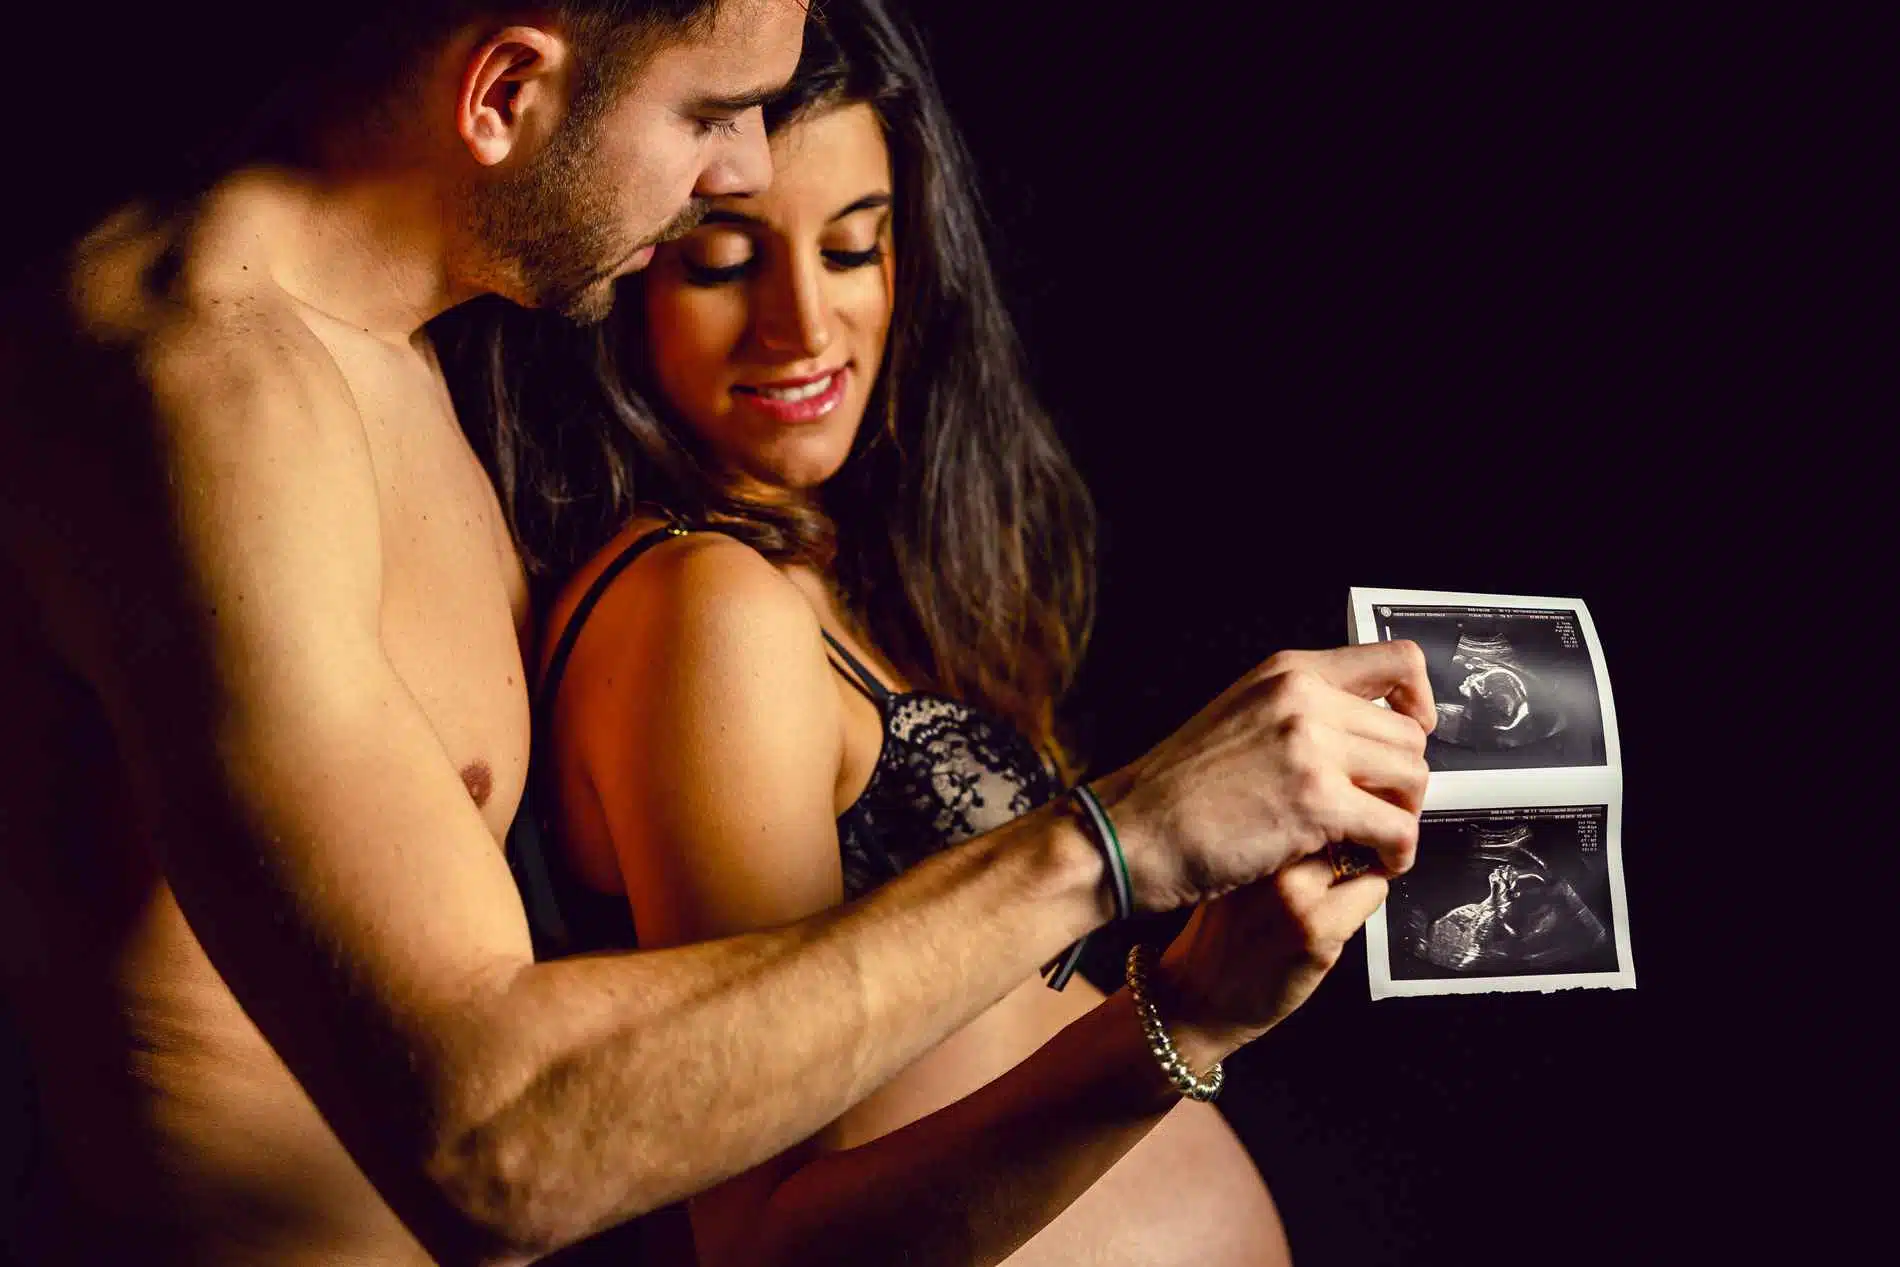 sesion de fotos embarazo en pareja - Sesión de fotos para embarazadas - Fotografía premamá